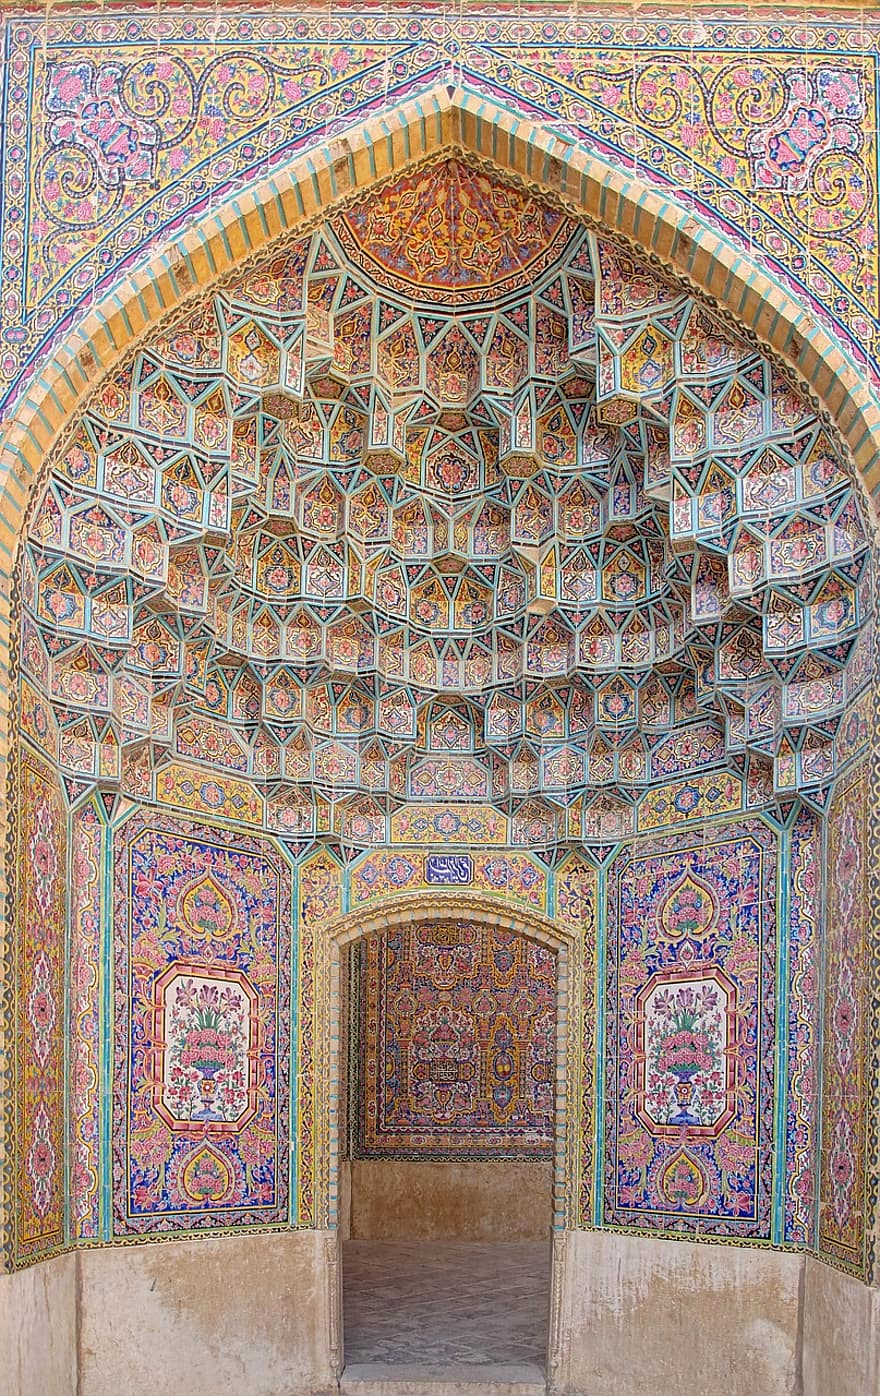 Írán, Persie, shiraz, kultura, kultur, architektura, dekorace, vzor, slavné místo, náboženství, mozaika